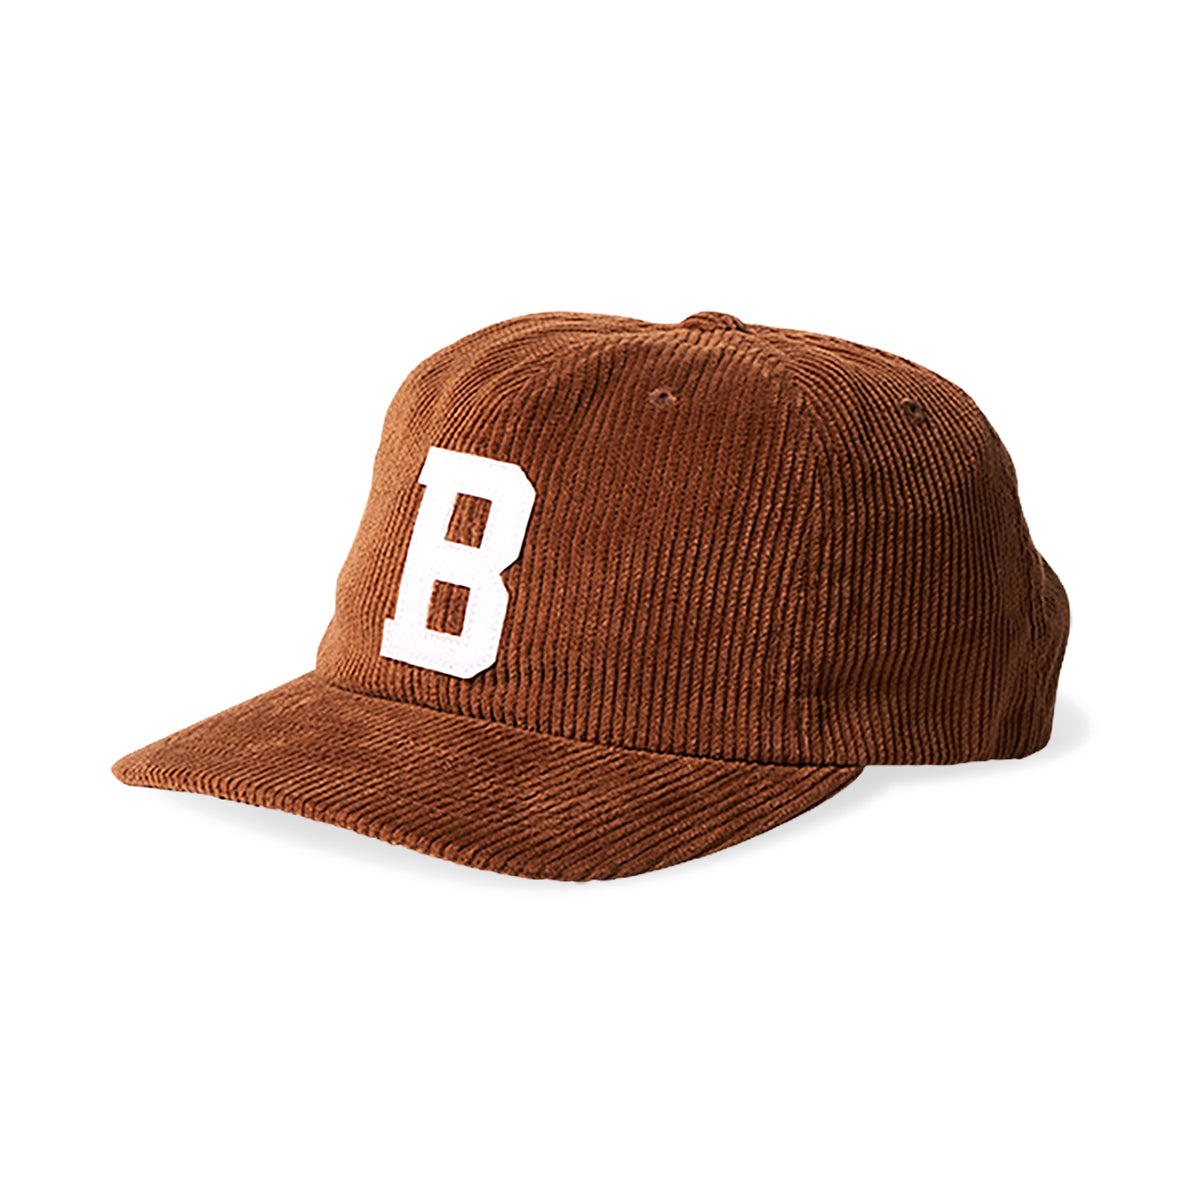 BIG B MP CAP